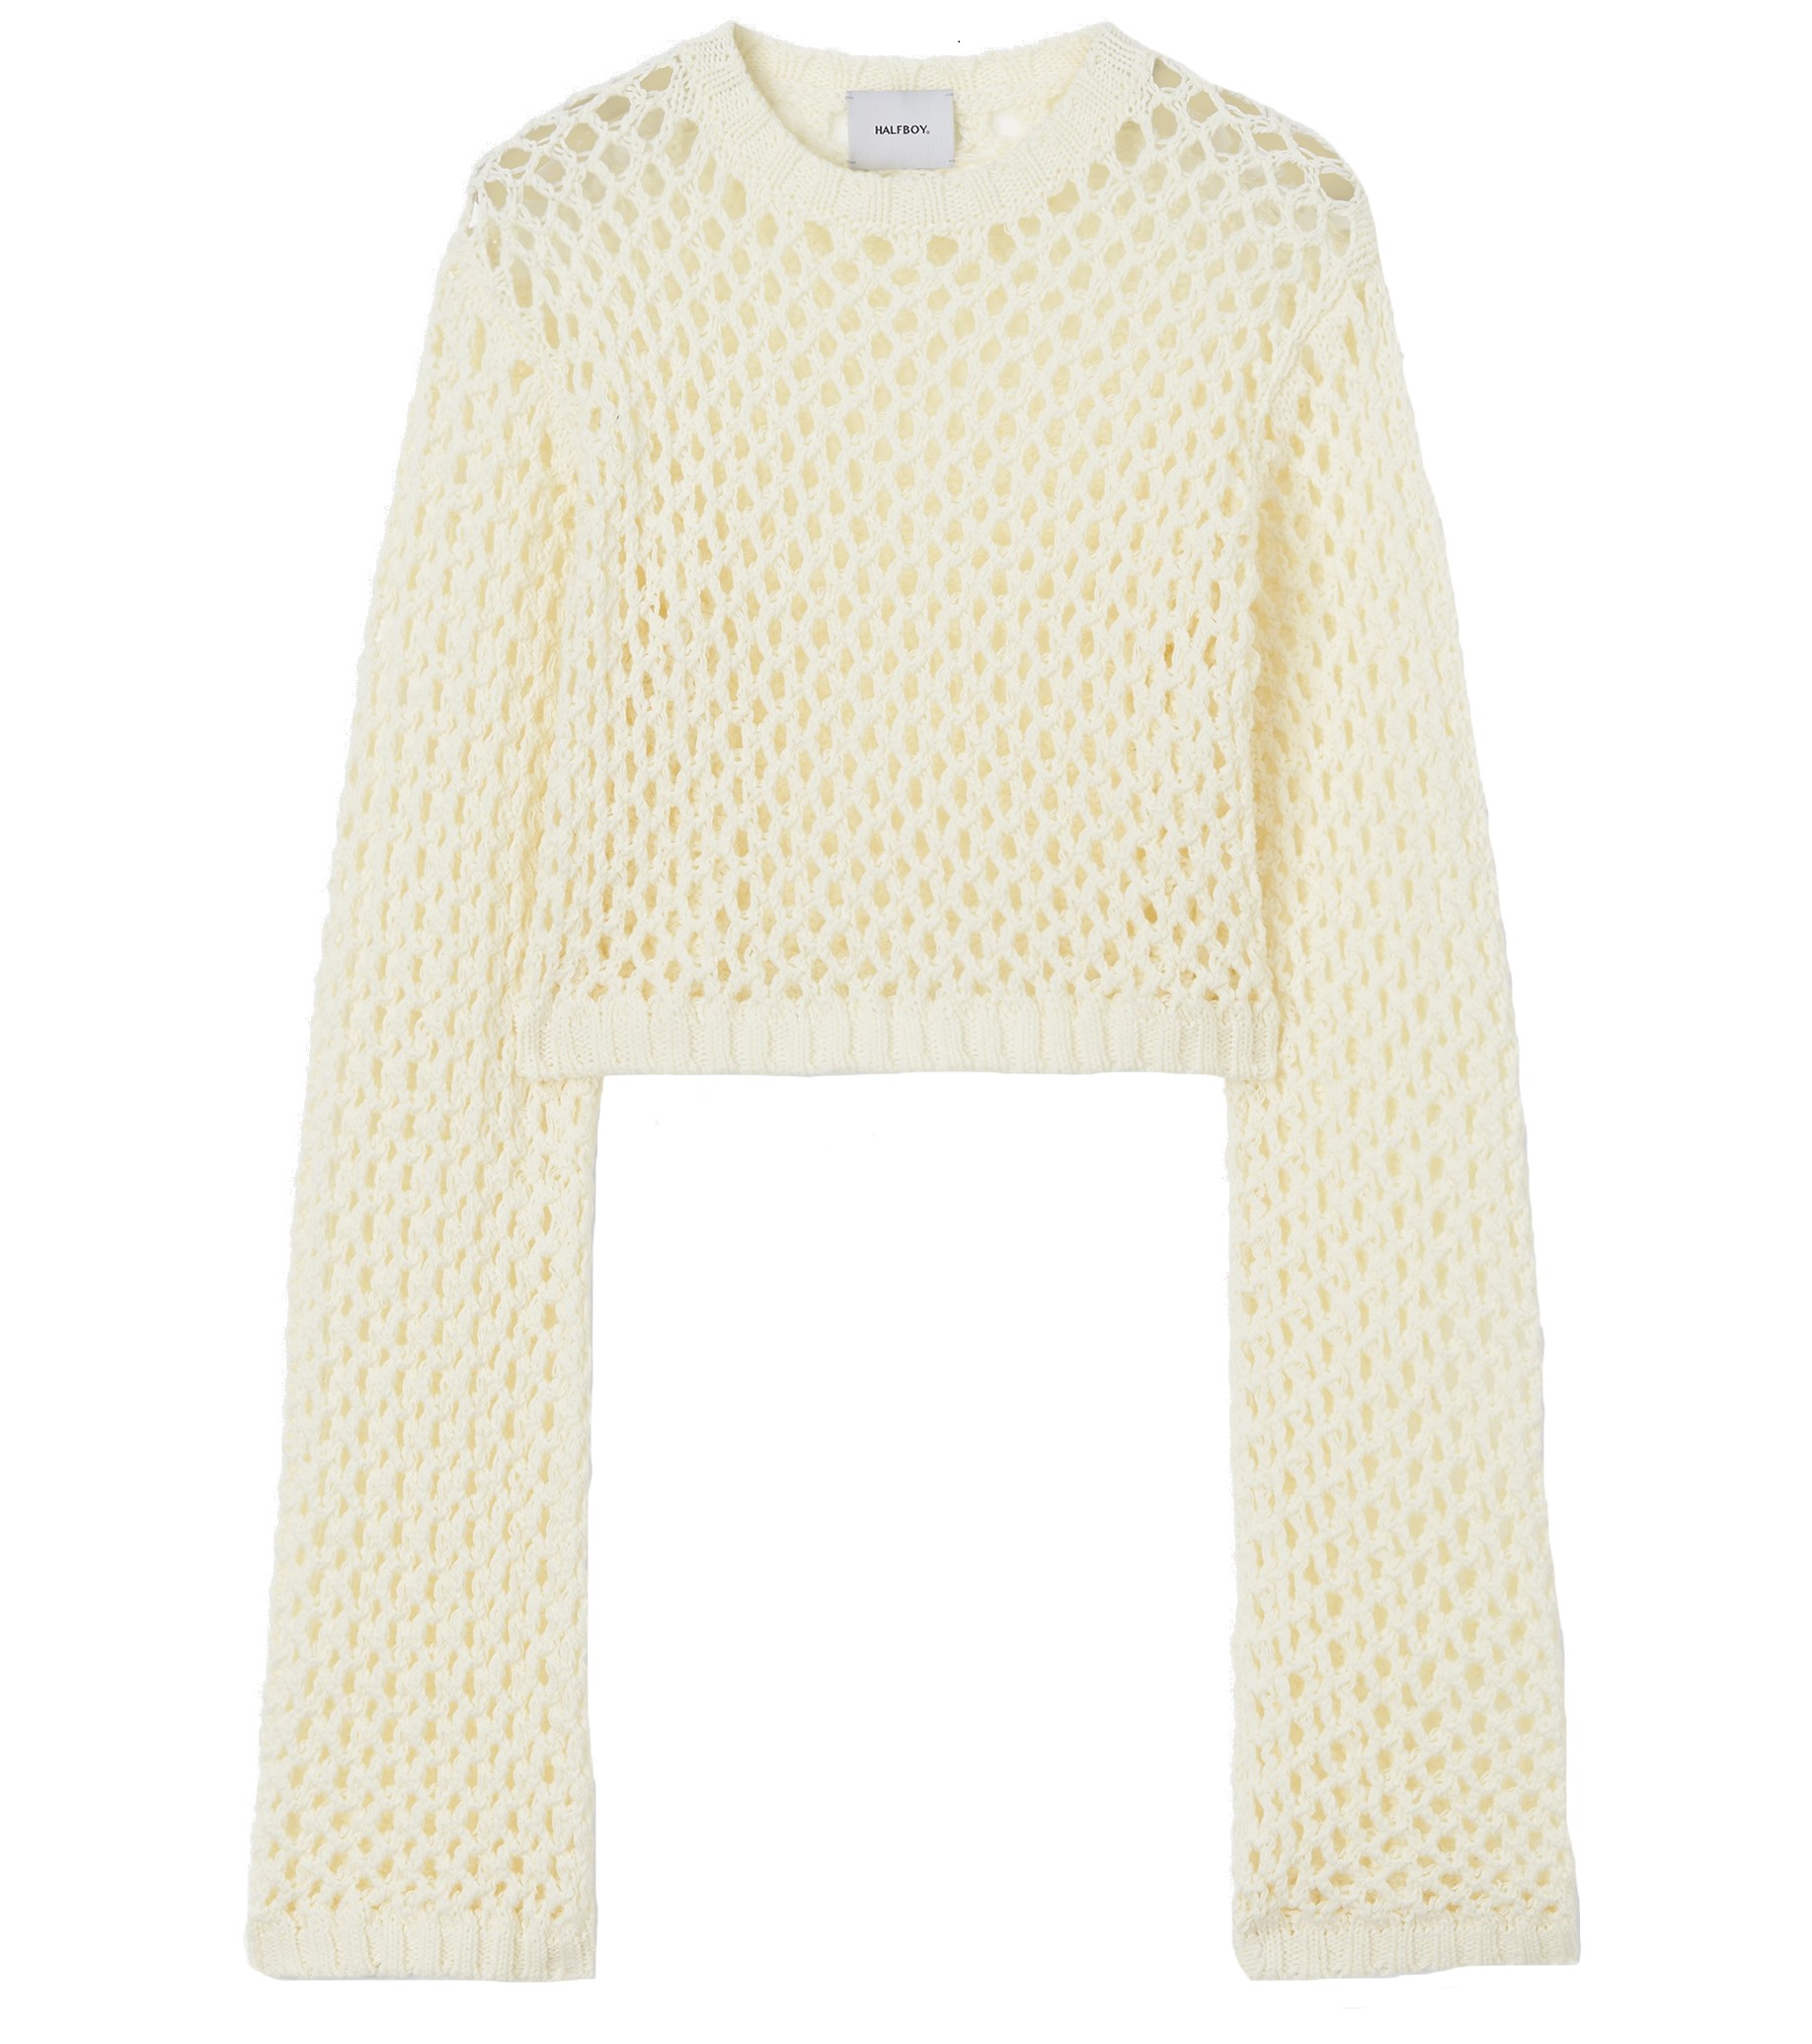 HALFBOY Short Net Pullover in Cream